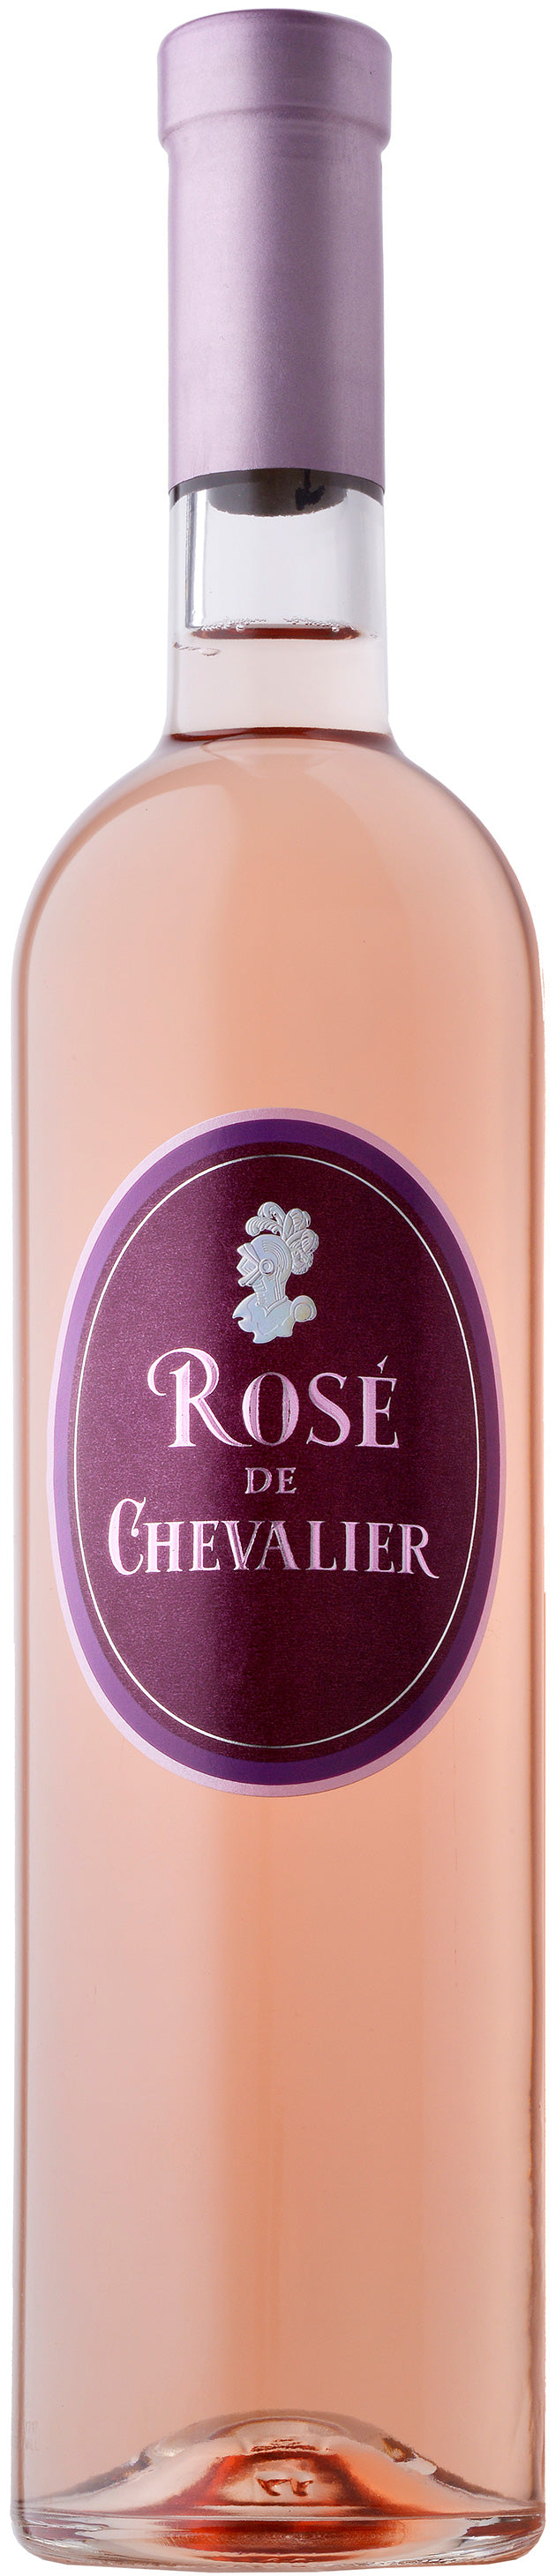 Rose de Chevalier Bordeaux 2020